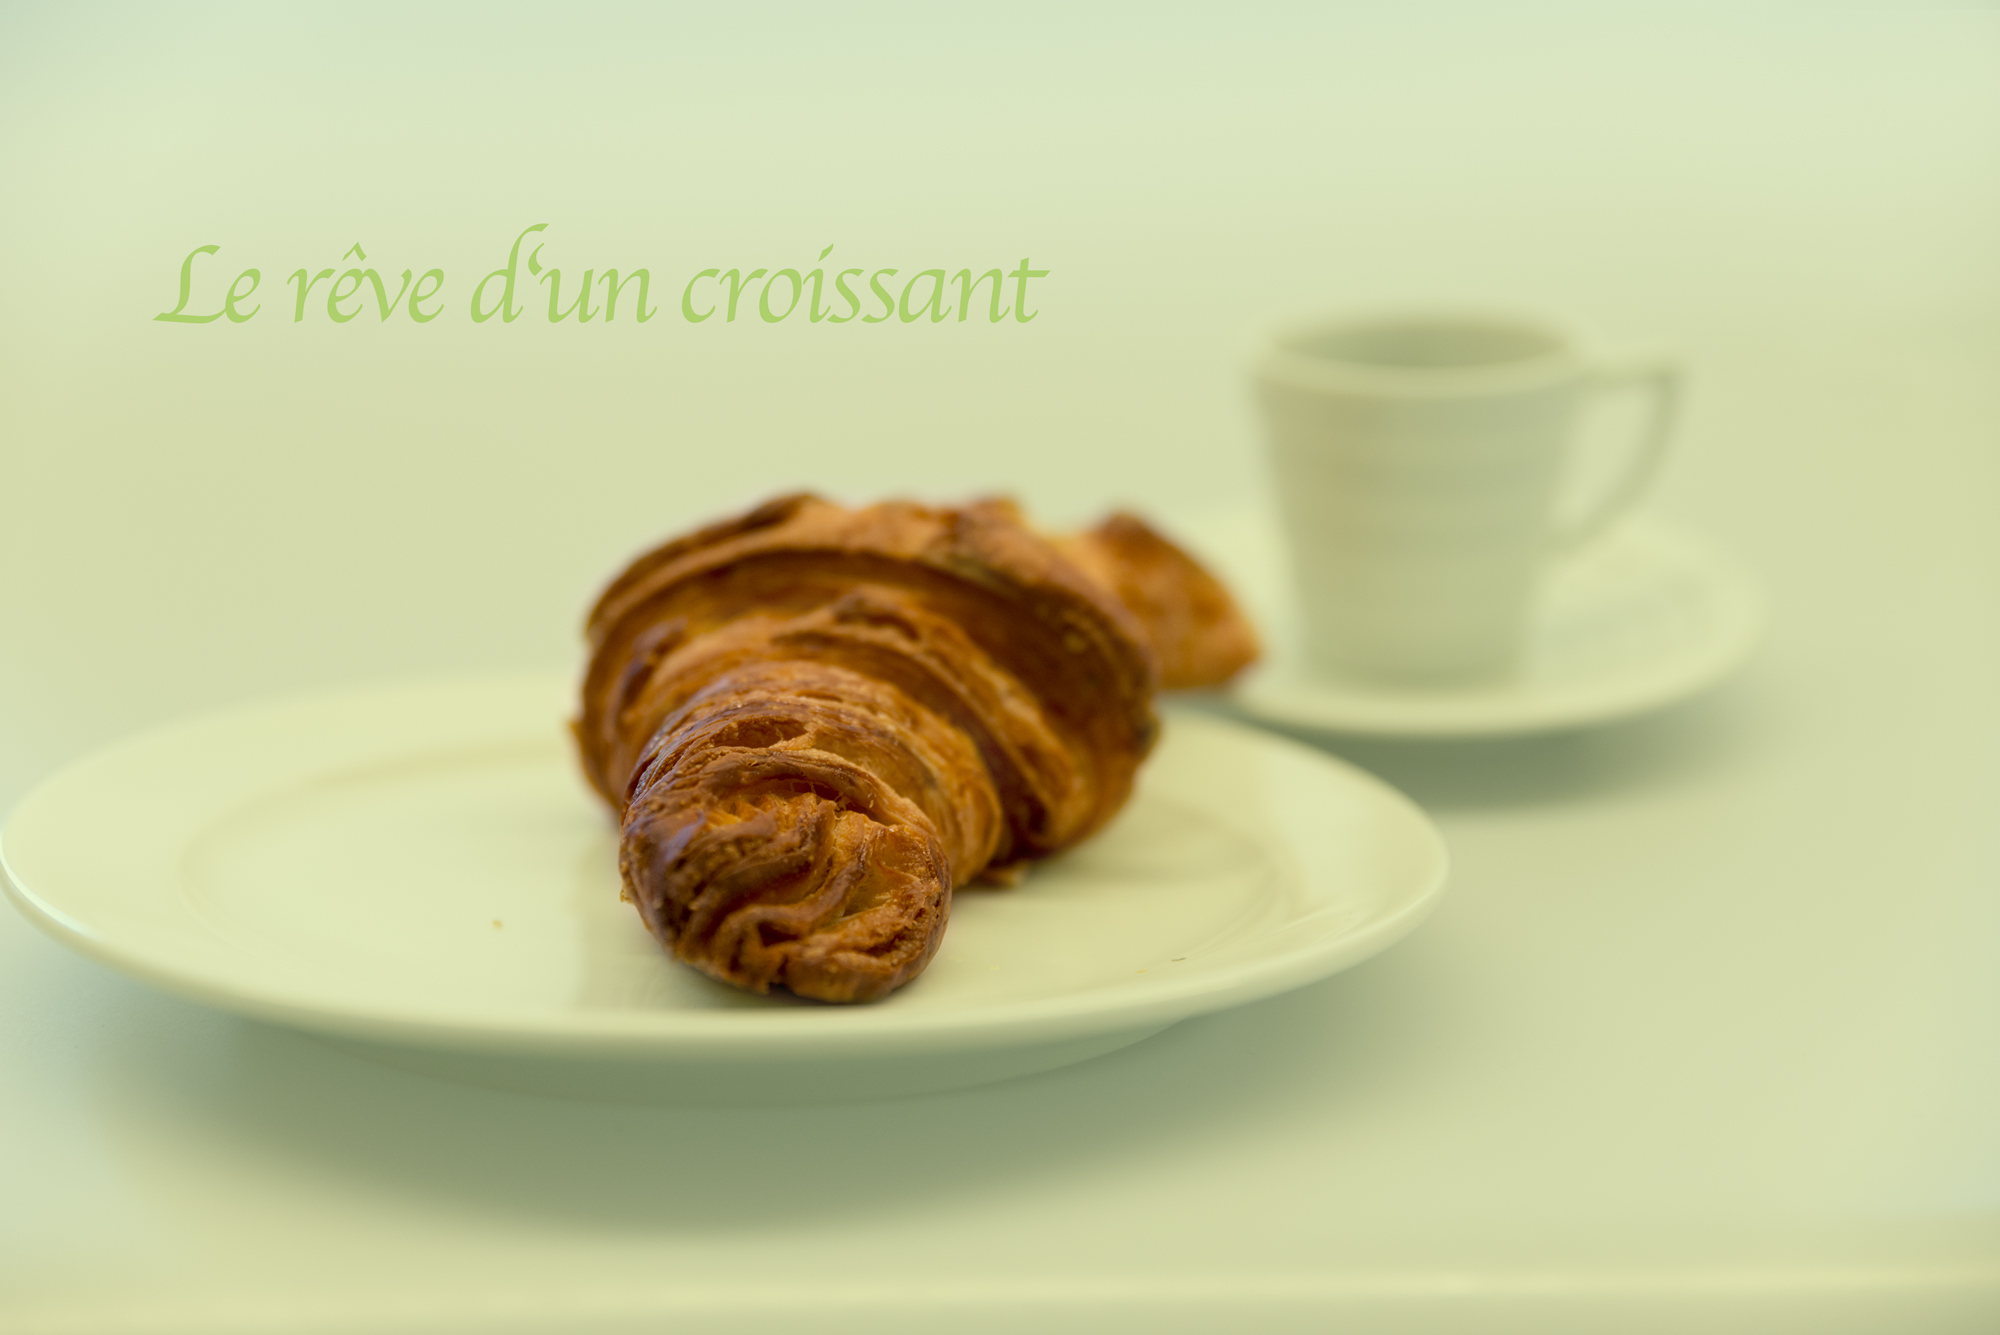 Der Traum von einem Croissant